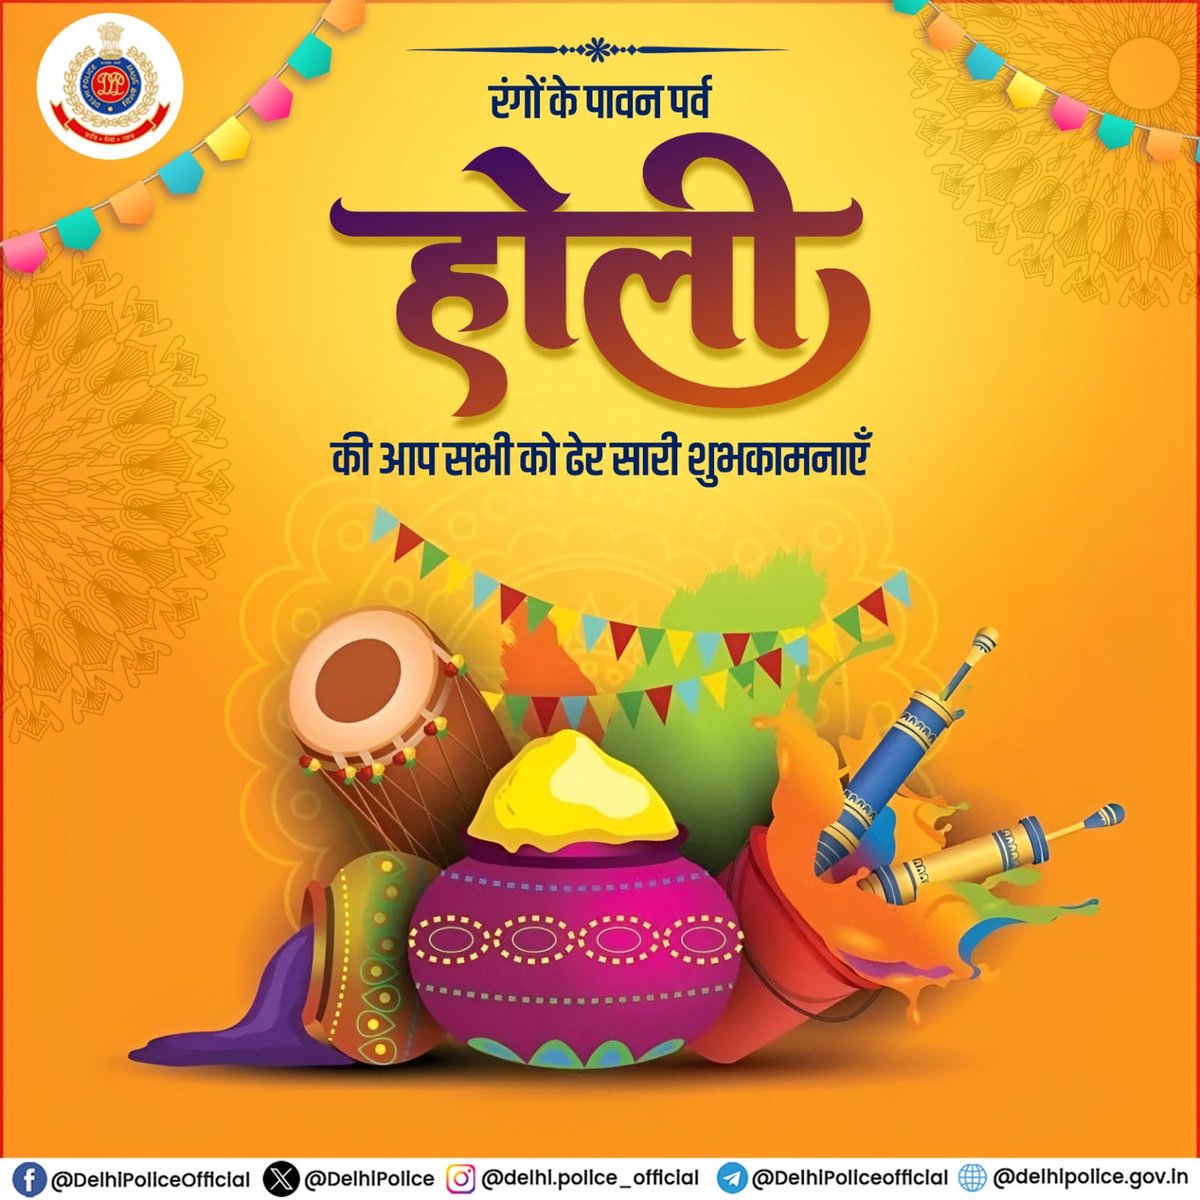 समरसता और सौहार्द भारत की संस्कृति का अभिन्न हिस्सा है। समरसता और प्रेम के प्रतीक, रंगों के पावन पर्व होली की हार्दिक शुभकामनाएं। #HappyHoli #Holi2024